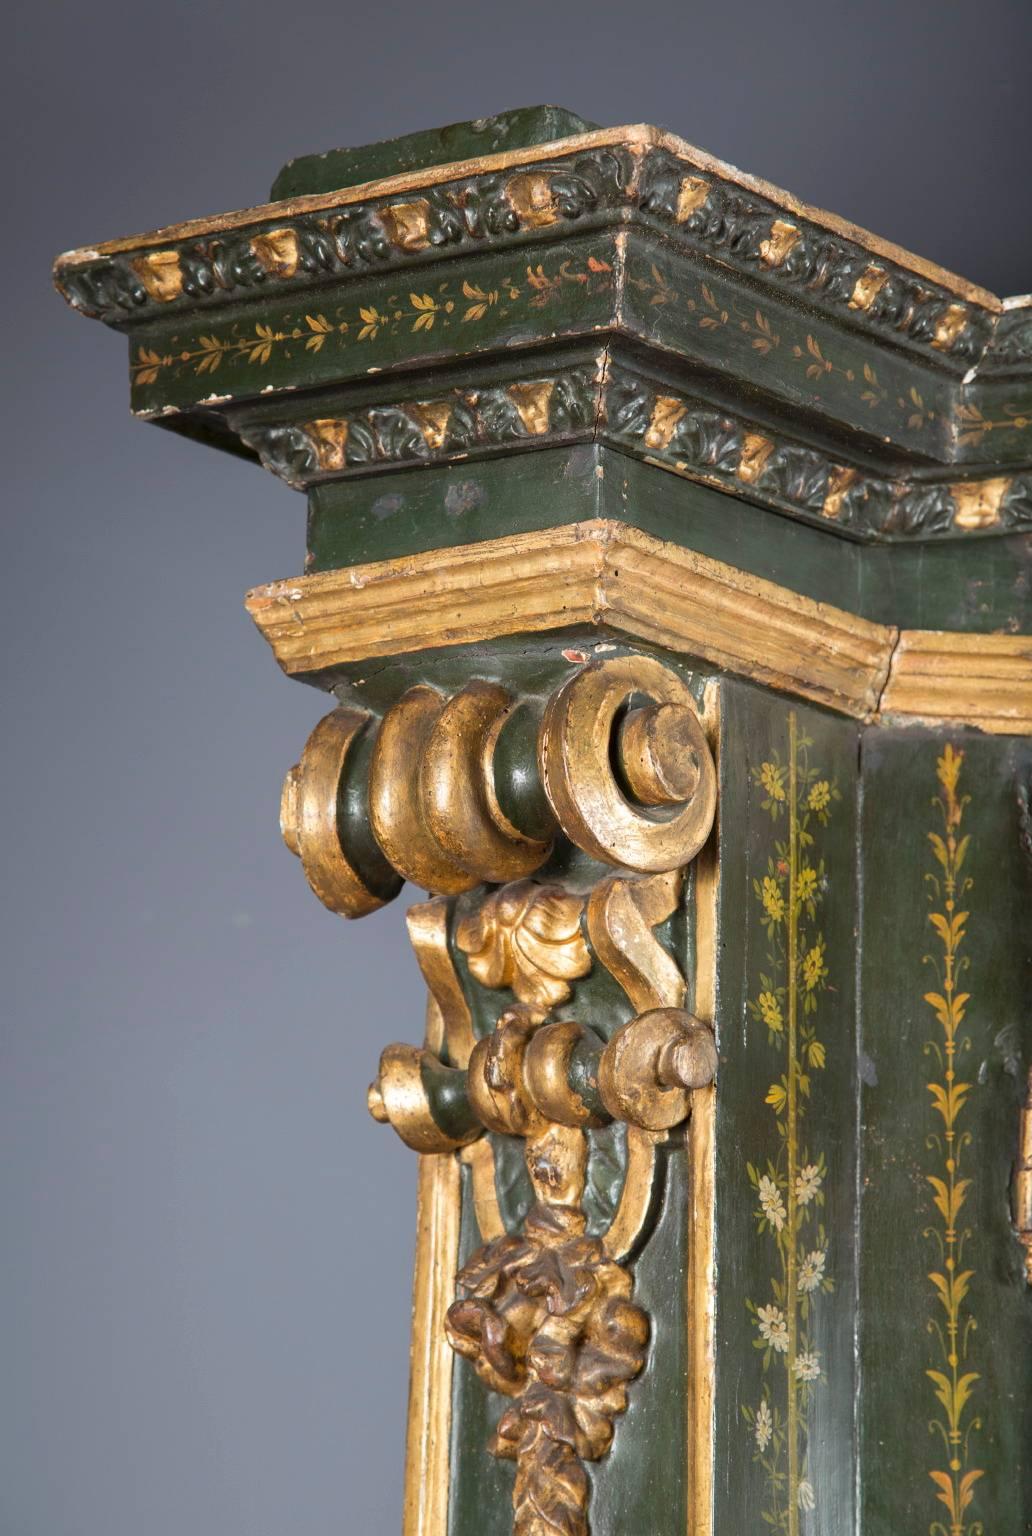 Fabriquée au XVIIIe siècle, cette ancienne armoire autrichienne à deux portes est peinte d'un motif floral bien détaillé et ornée de décorations sculptées à la main et dorées à la feuille. De manière assez exquise, tous les verres d'origine sont